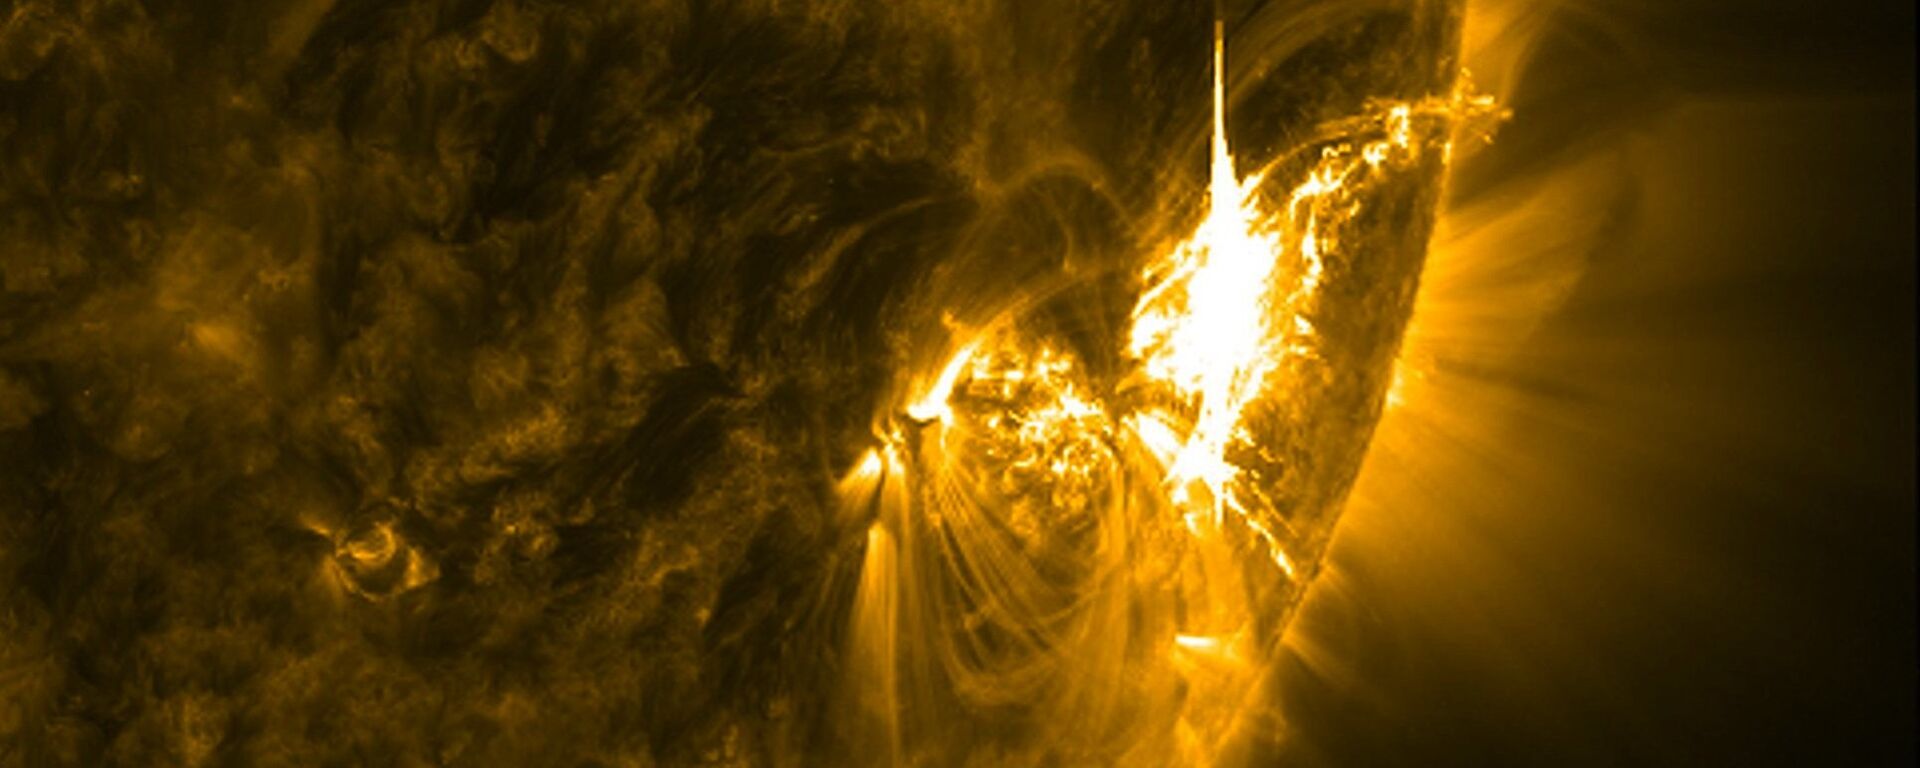 გეომაგნიტური ქარიშხალი მზეზე - Sputnik საქართველო, 1920, 24.08.2018